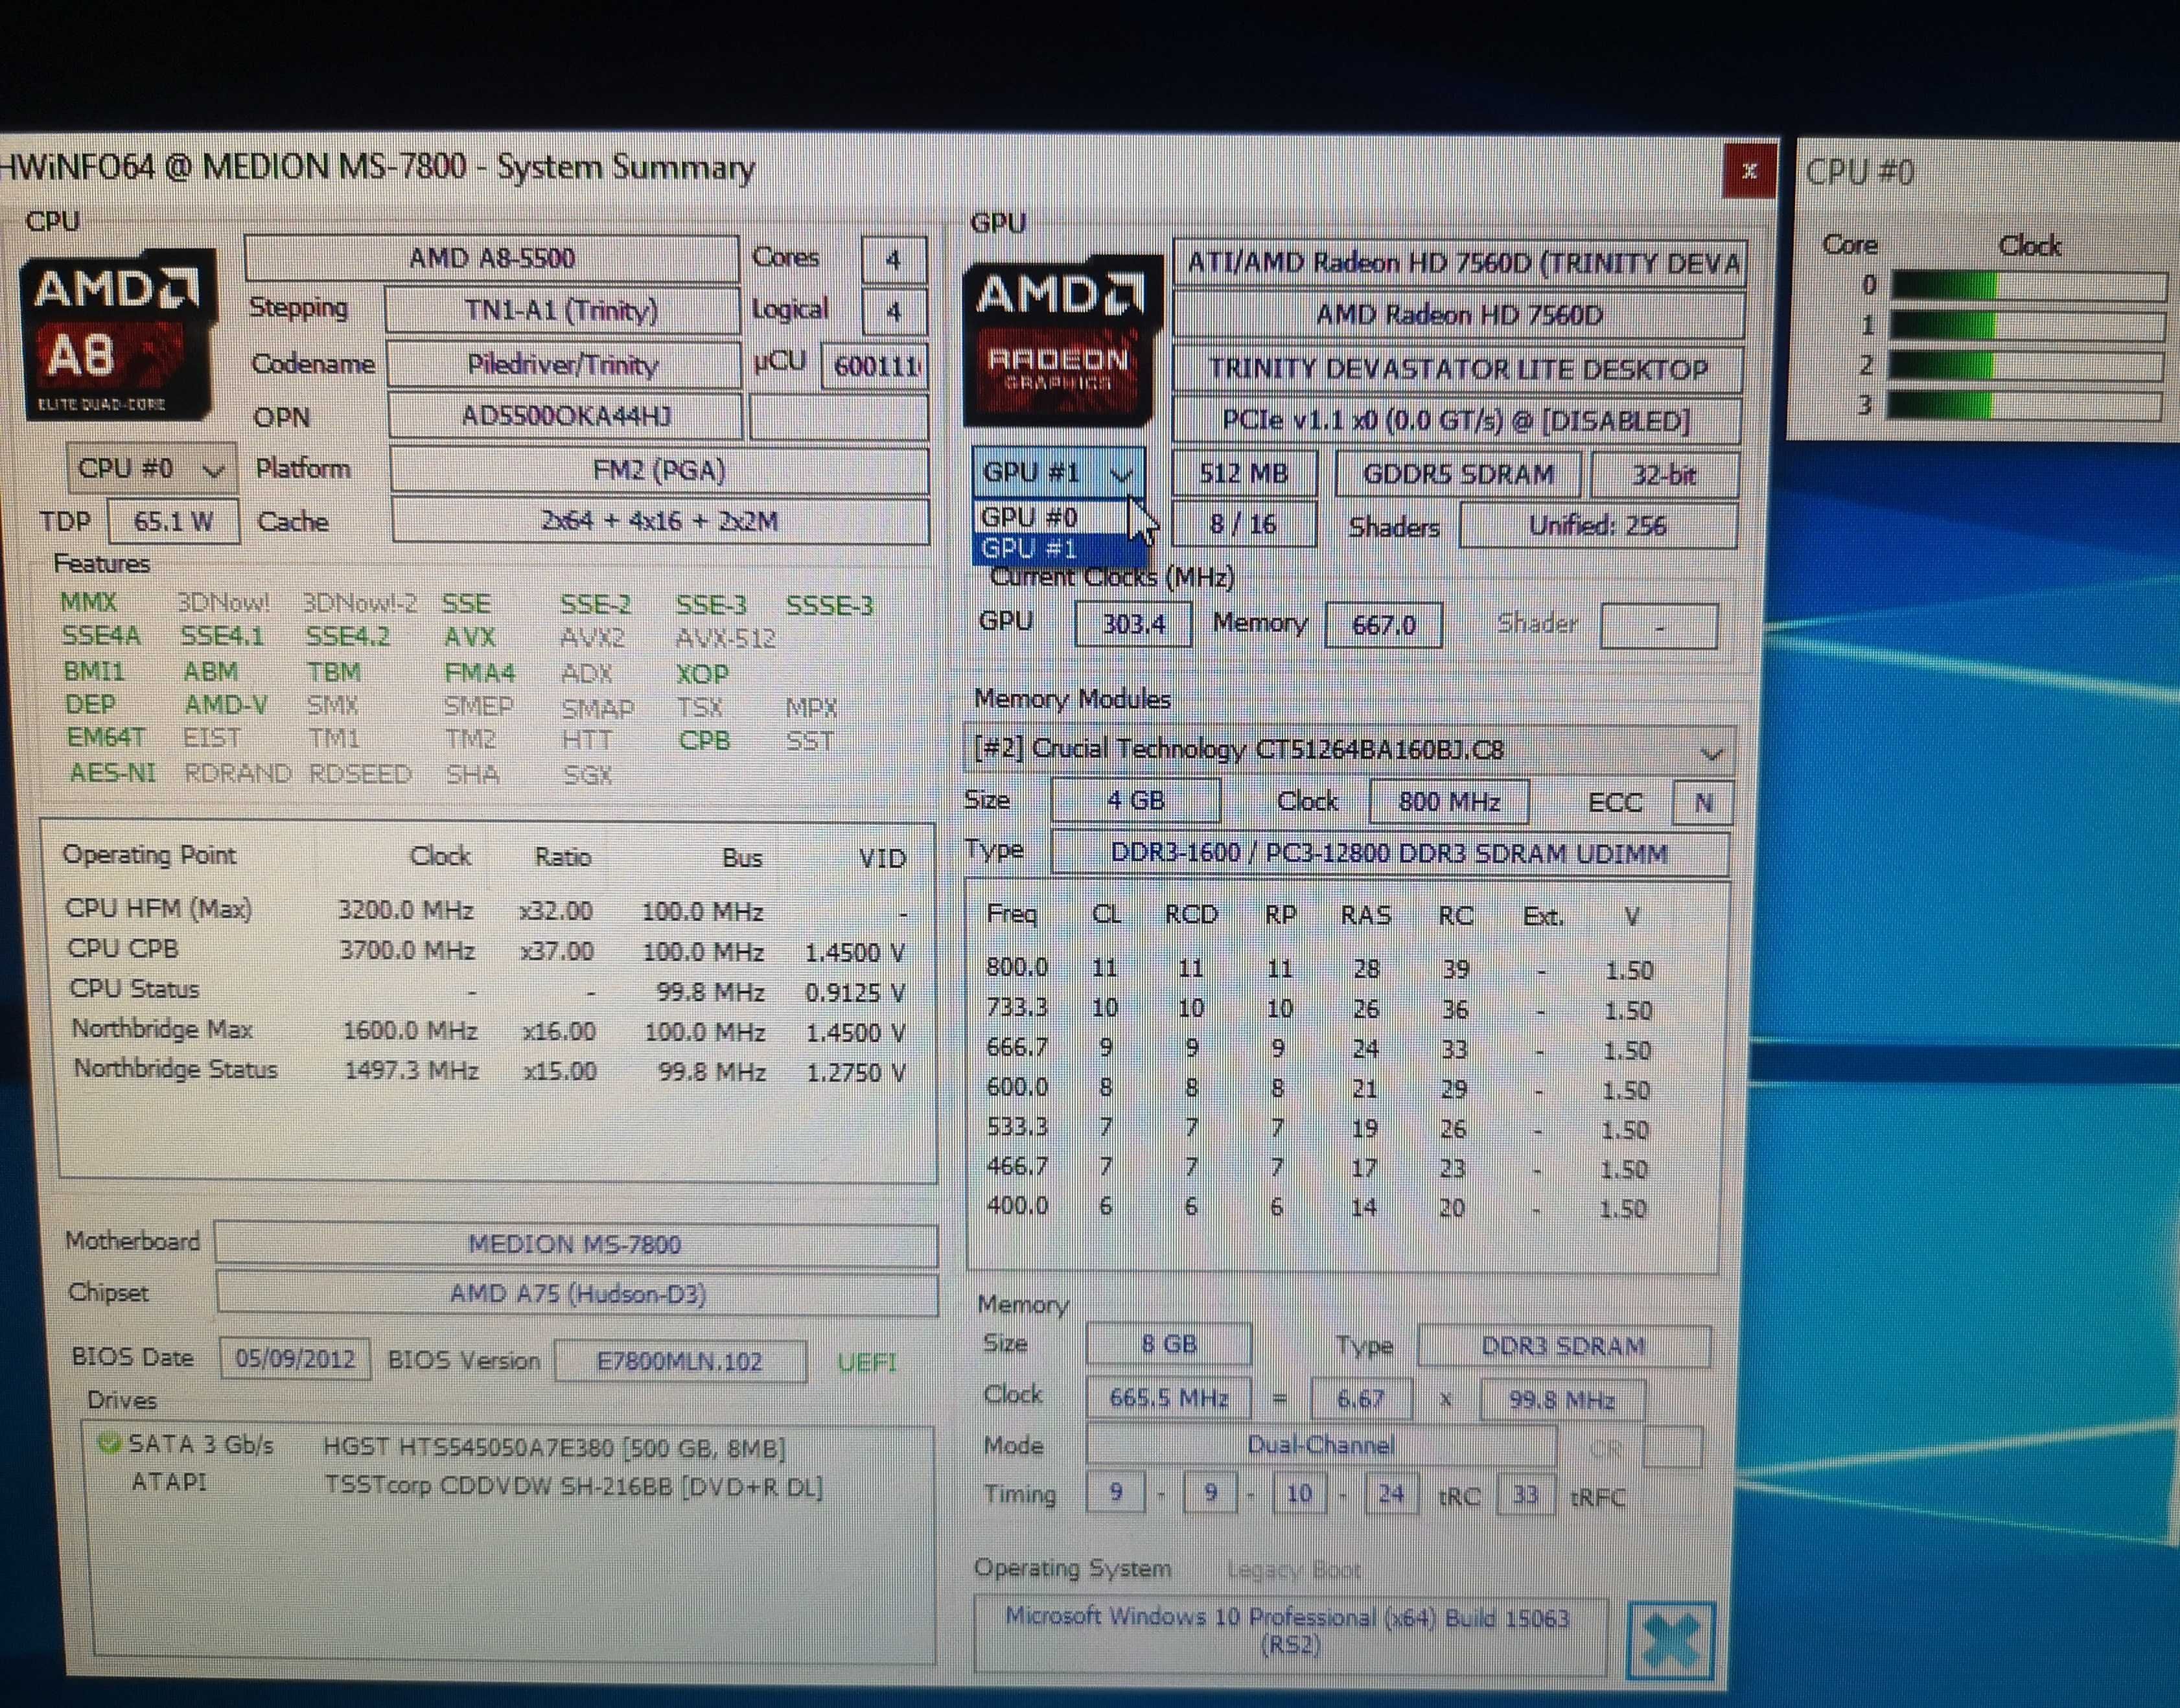 Medion AMD A8-5500, 8GB ,AMD Radeon HD 7670